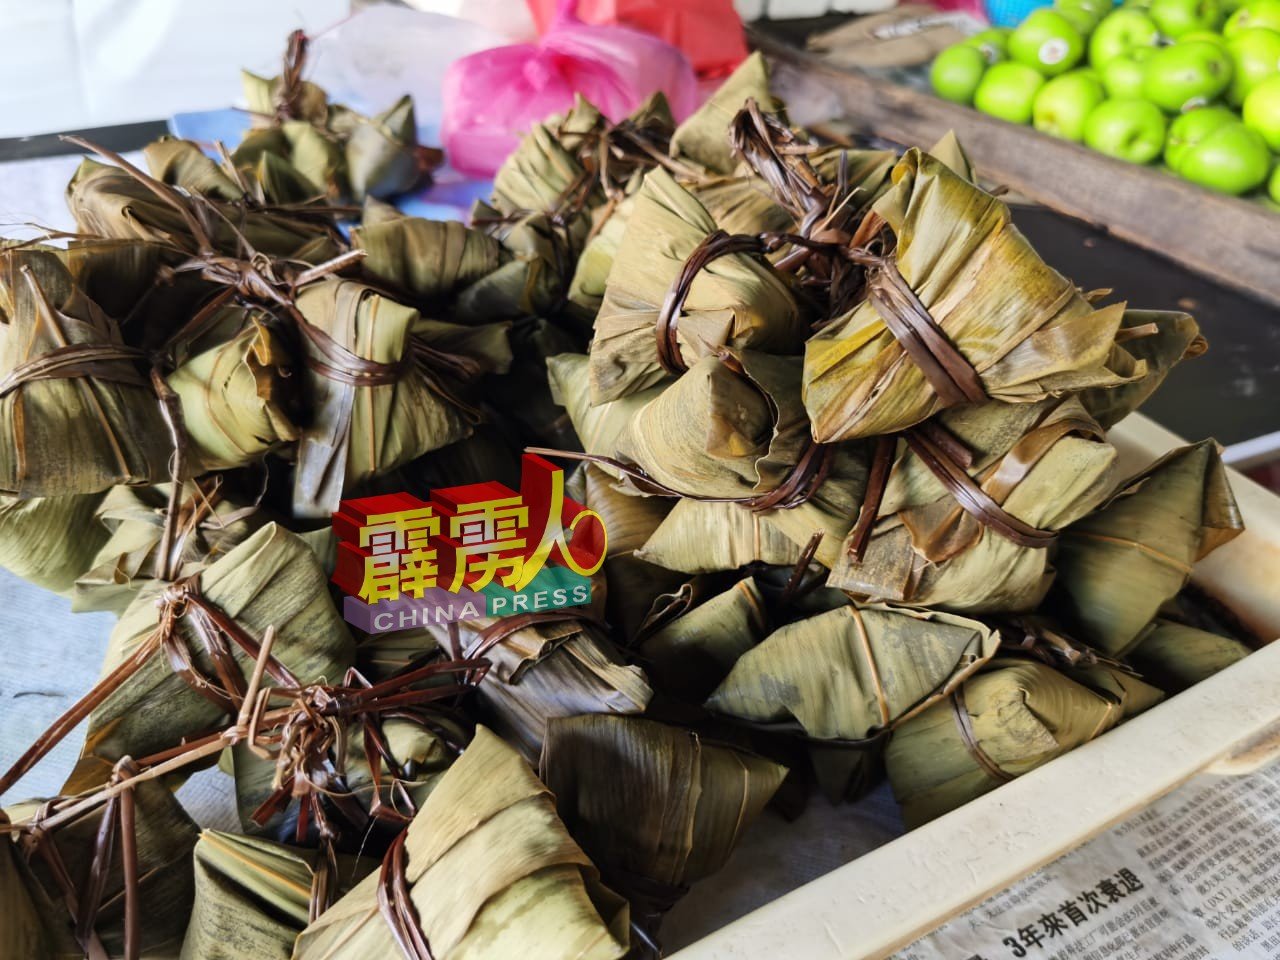 粽子价格虽上涨，但仍无阻市民选购粽子应节。